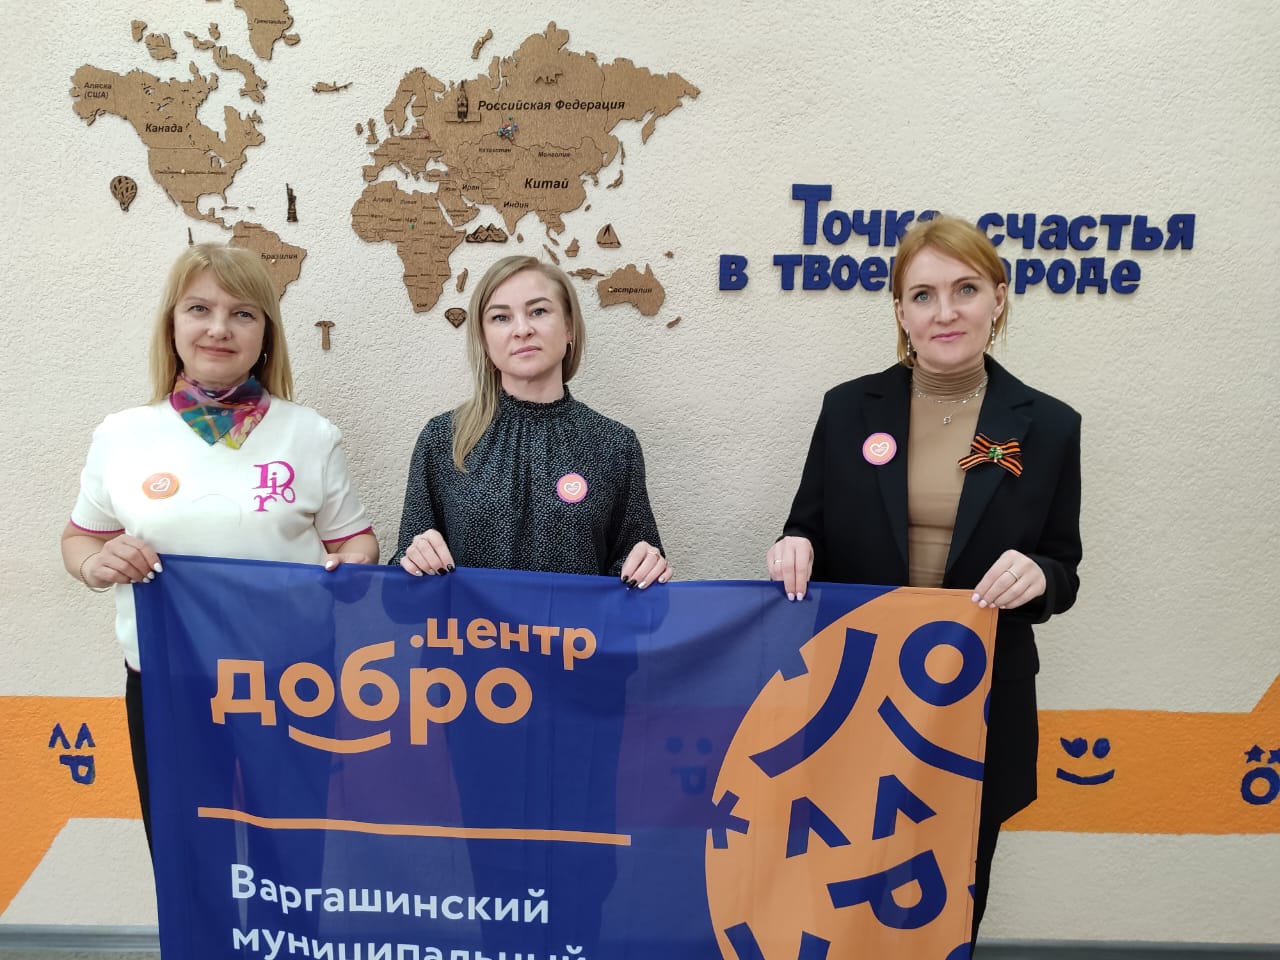 Сотрудники Варгашинского районного суда вложили свой вклад для поддержки участников СВО.